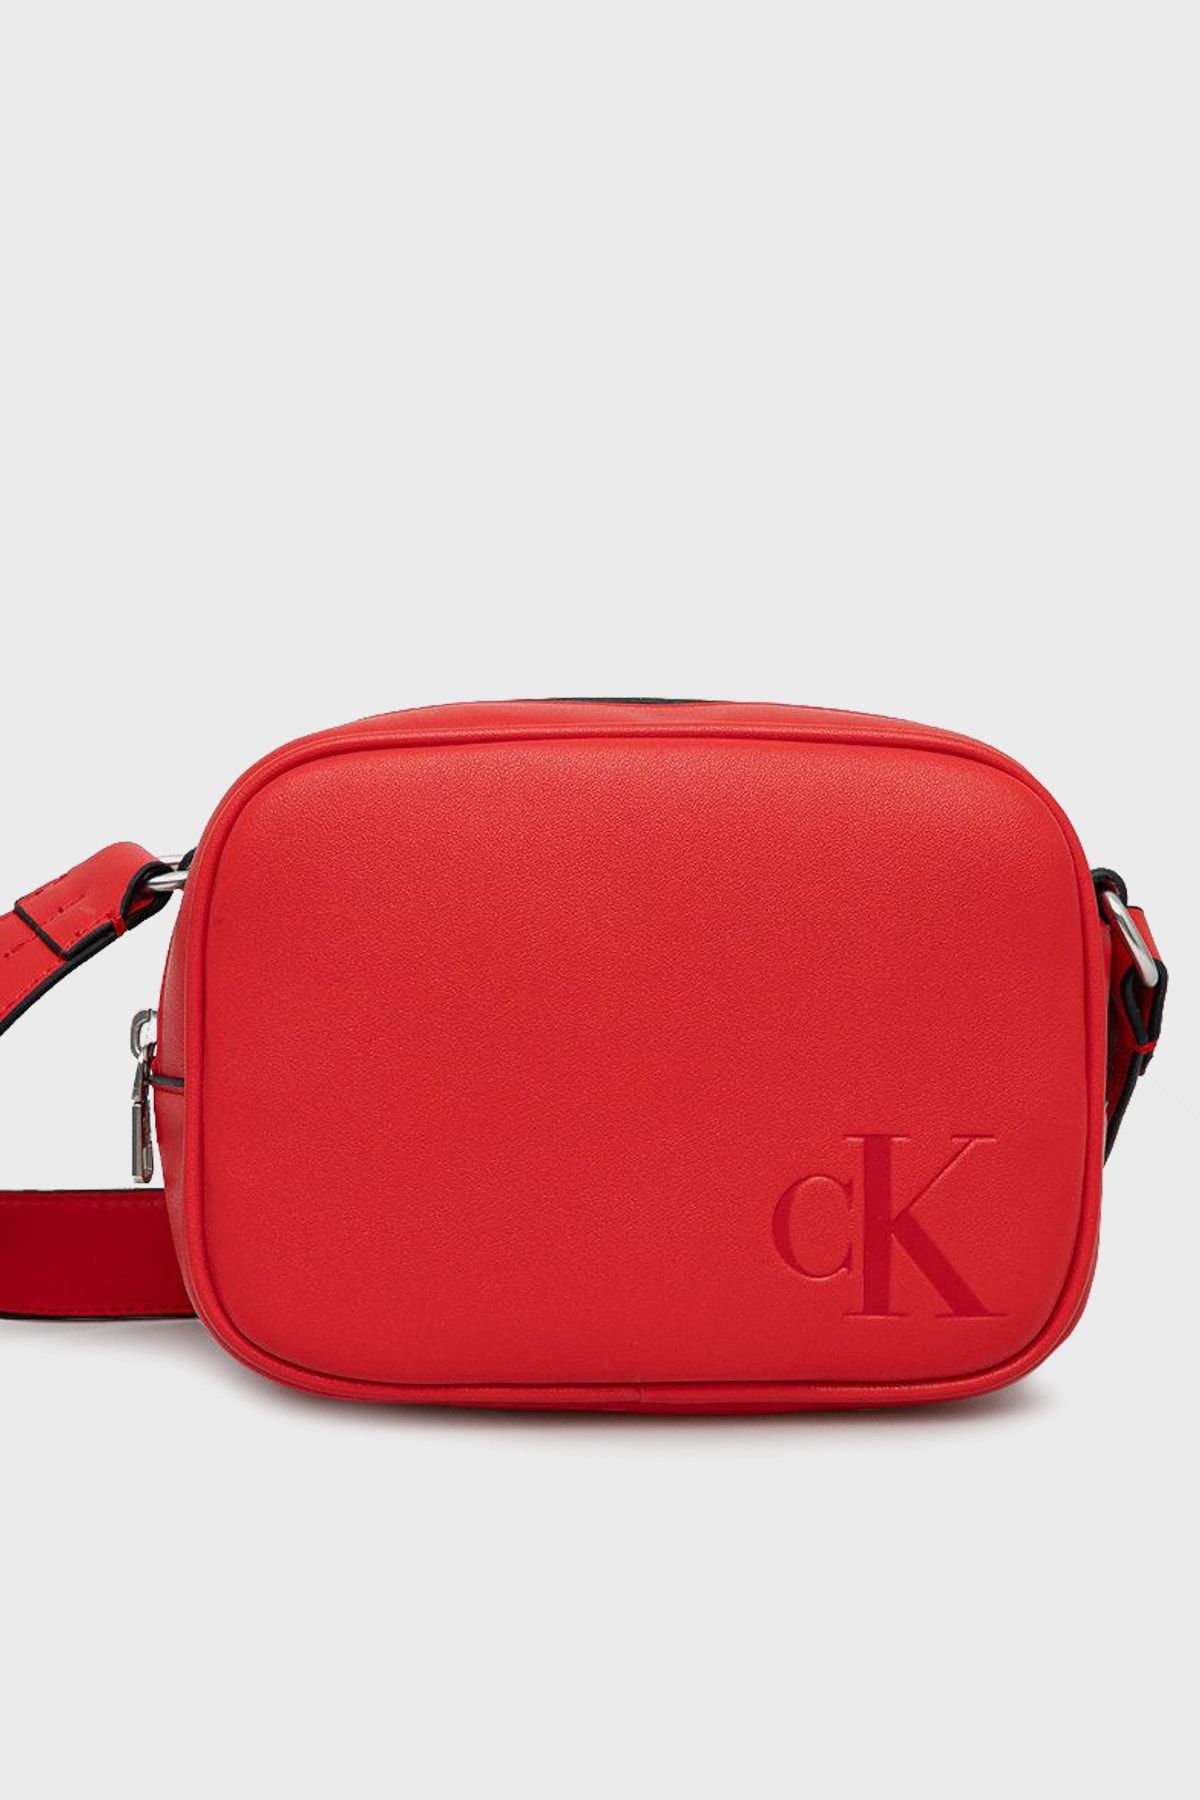 Calvin Klein, Bags, Calvin Klein Red Shoulder Bag